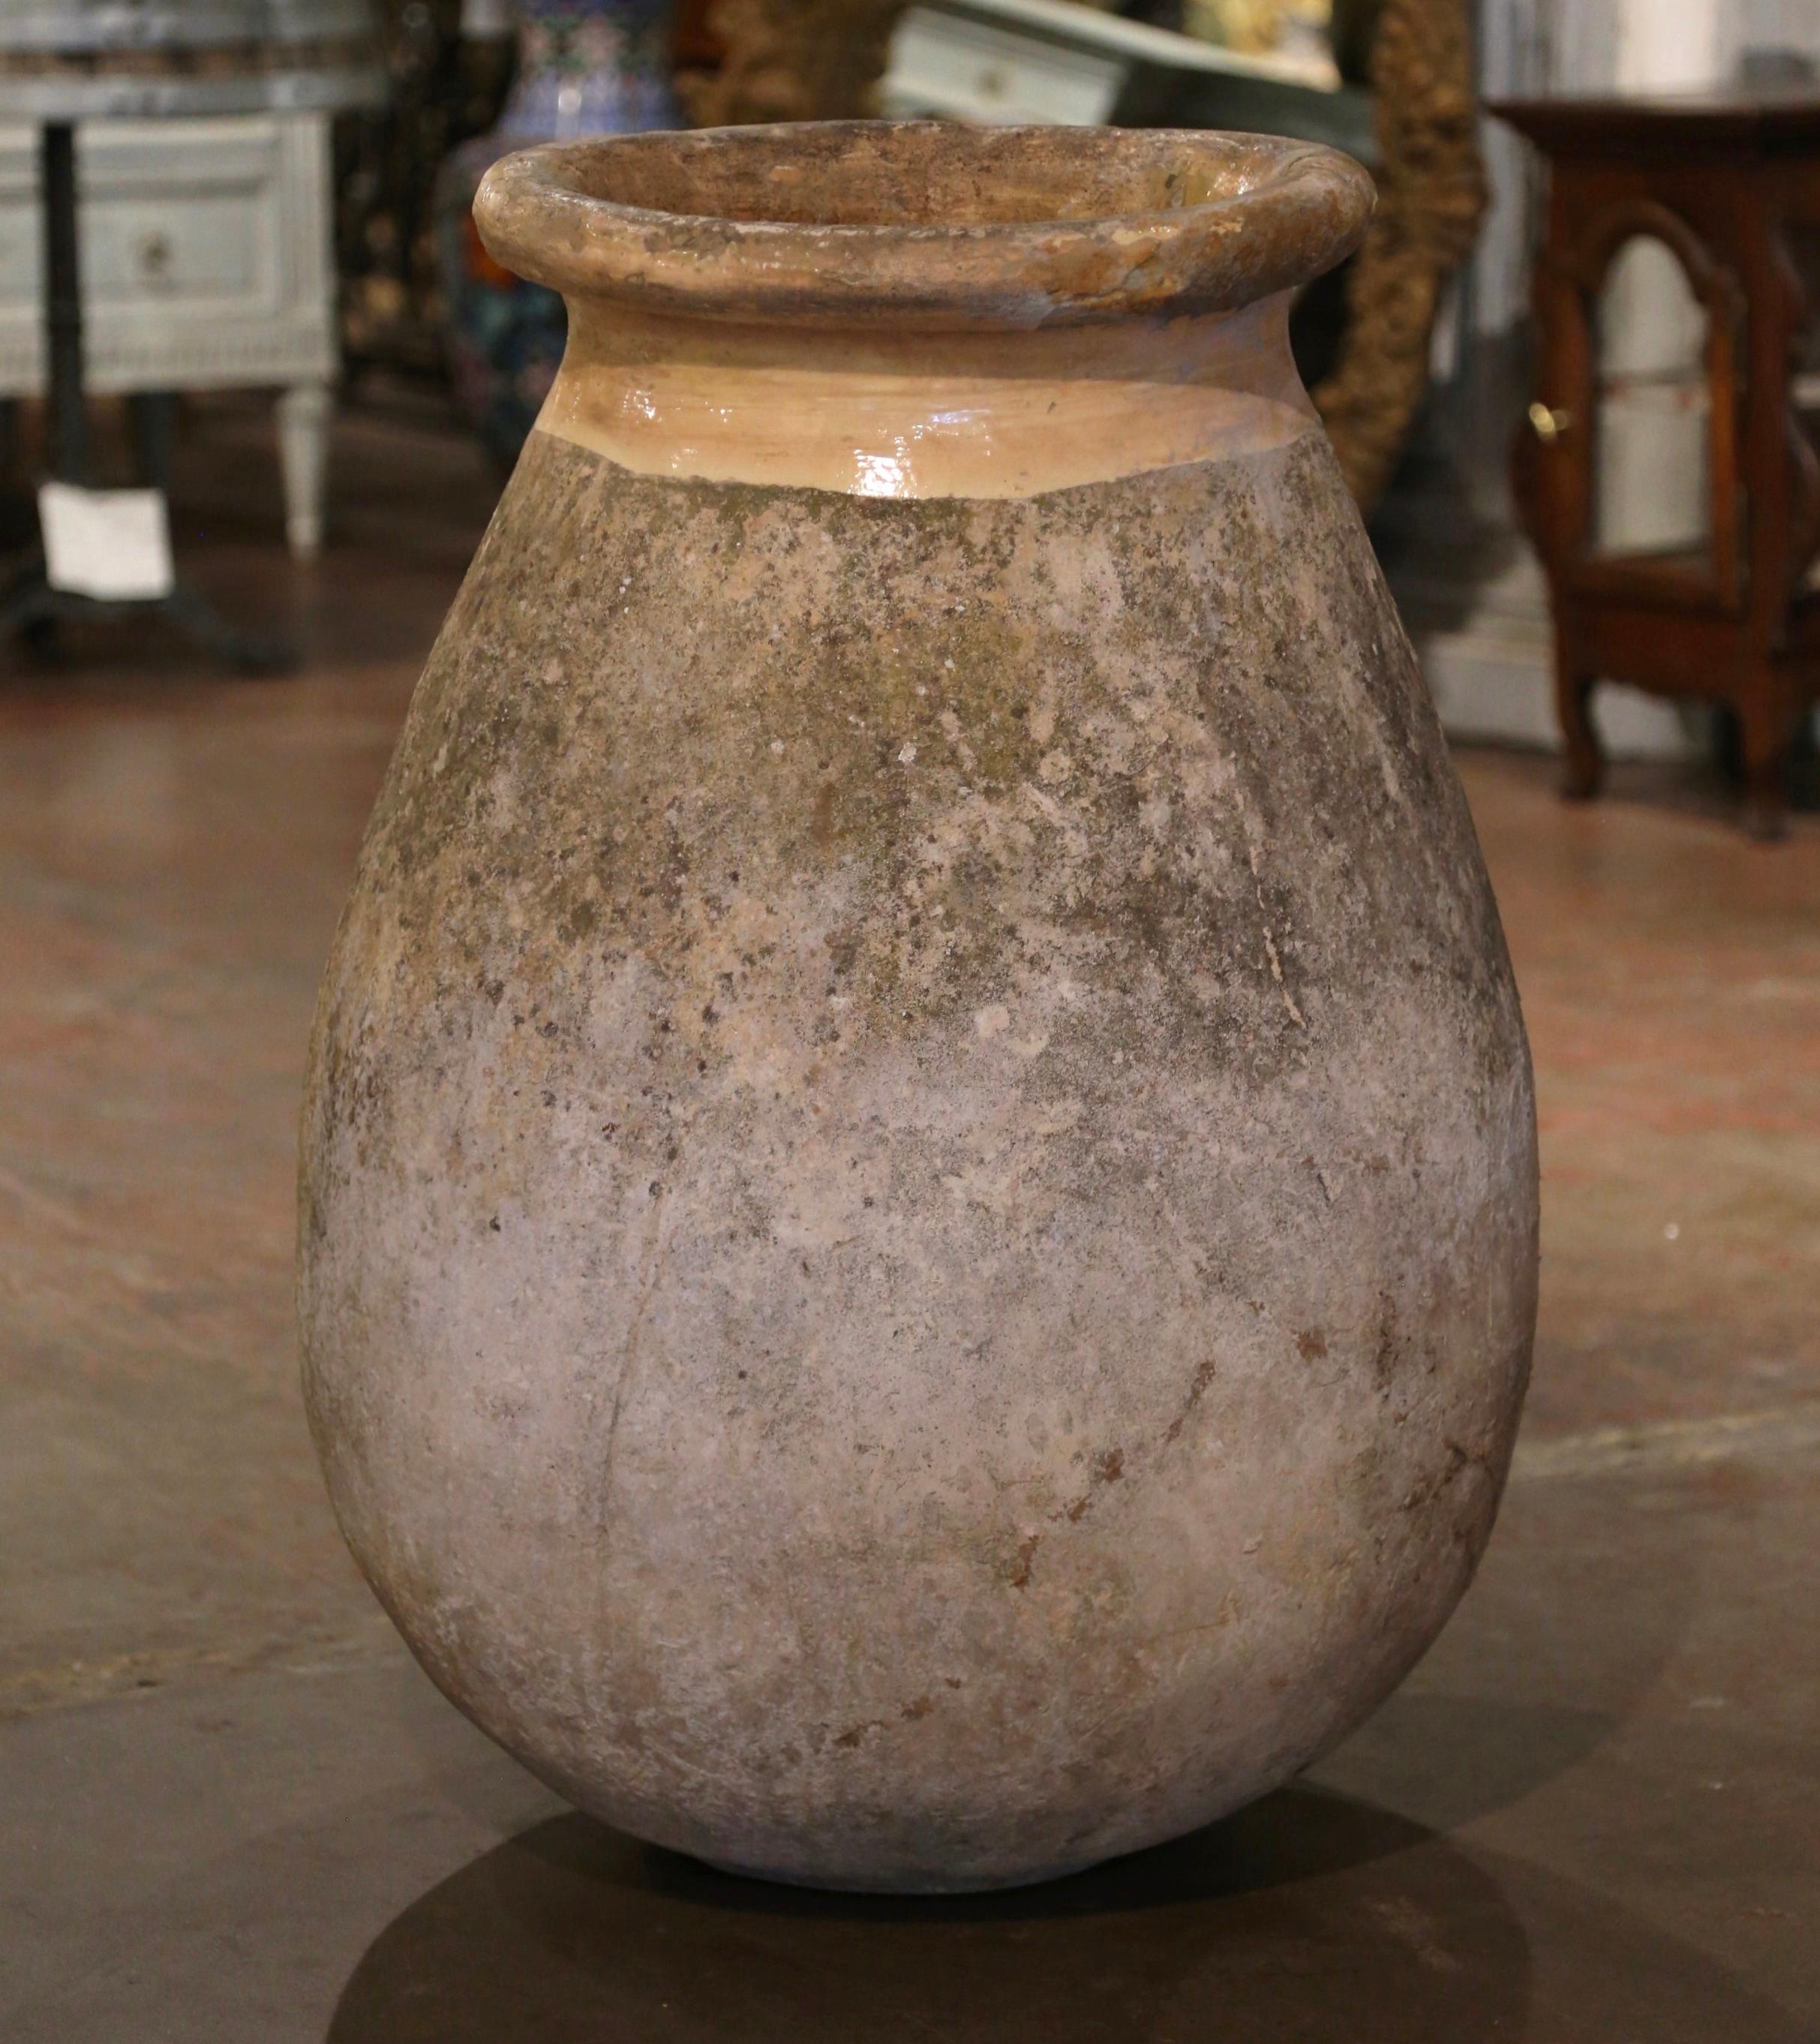 Cette grande jarre à huile d'olive en faïence a été créée à Biot, en Provence, dans le sud de la France, vers 1760. Fabriqué en argile blonde et de couleur neutre, le vase en terre cuite a une forme ronde et bulbeuse traditionnelle. Ce pot rustique